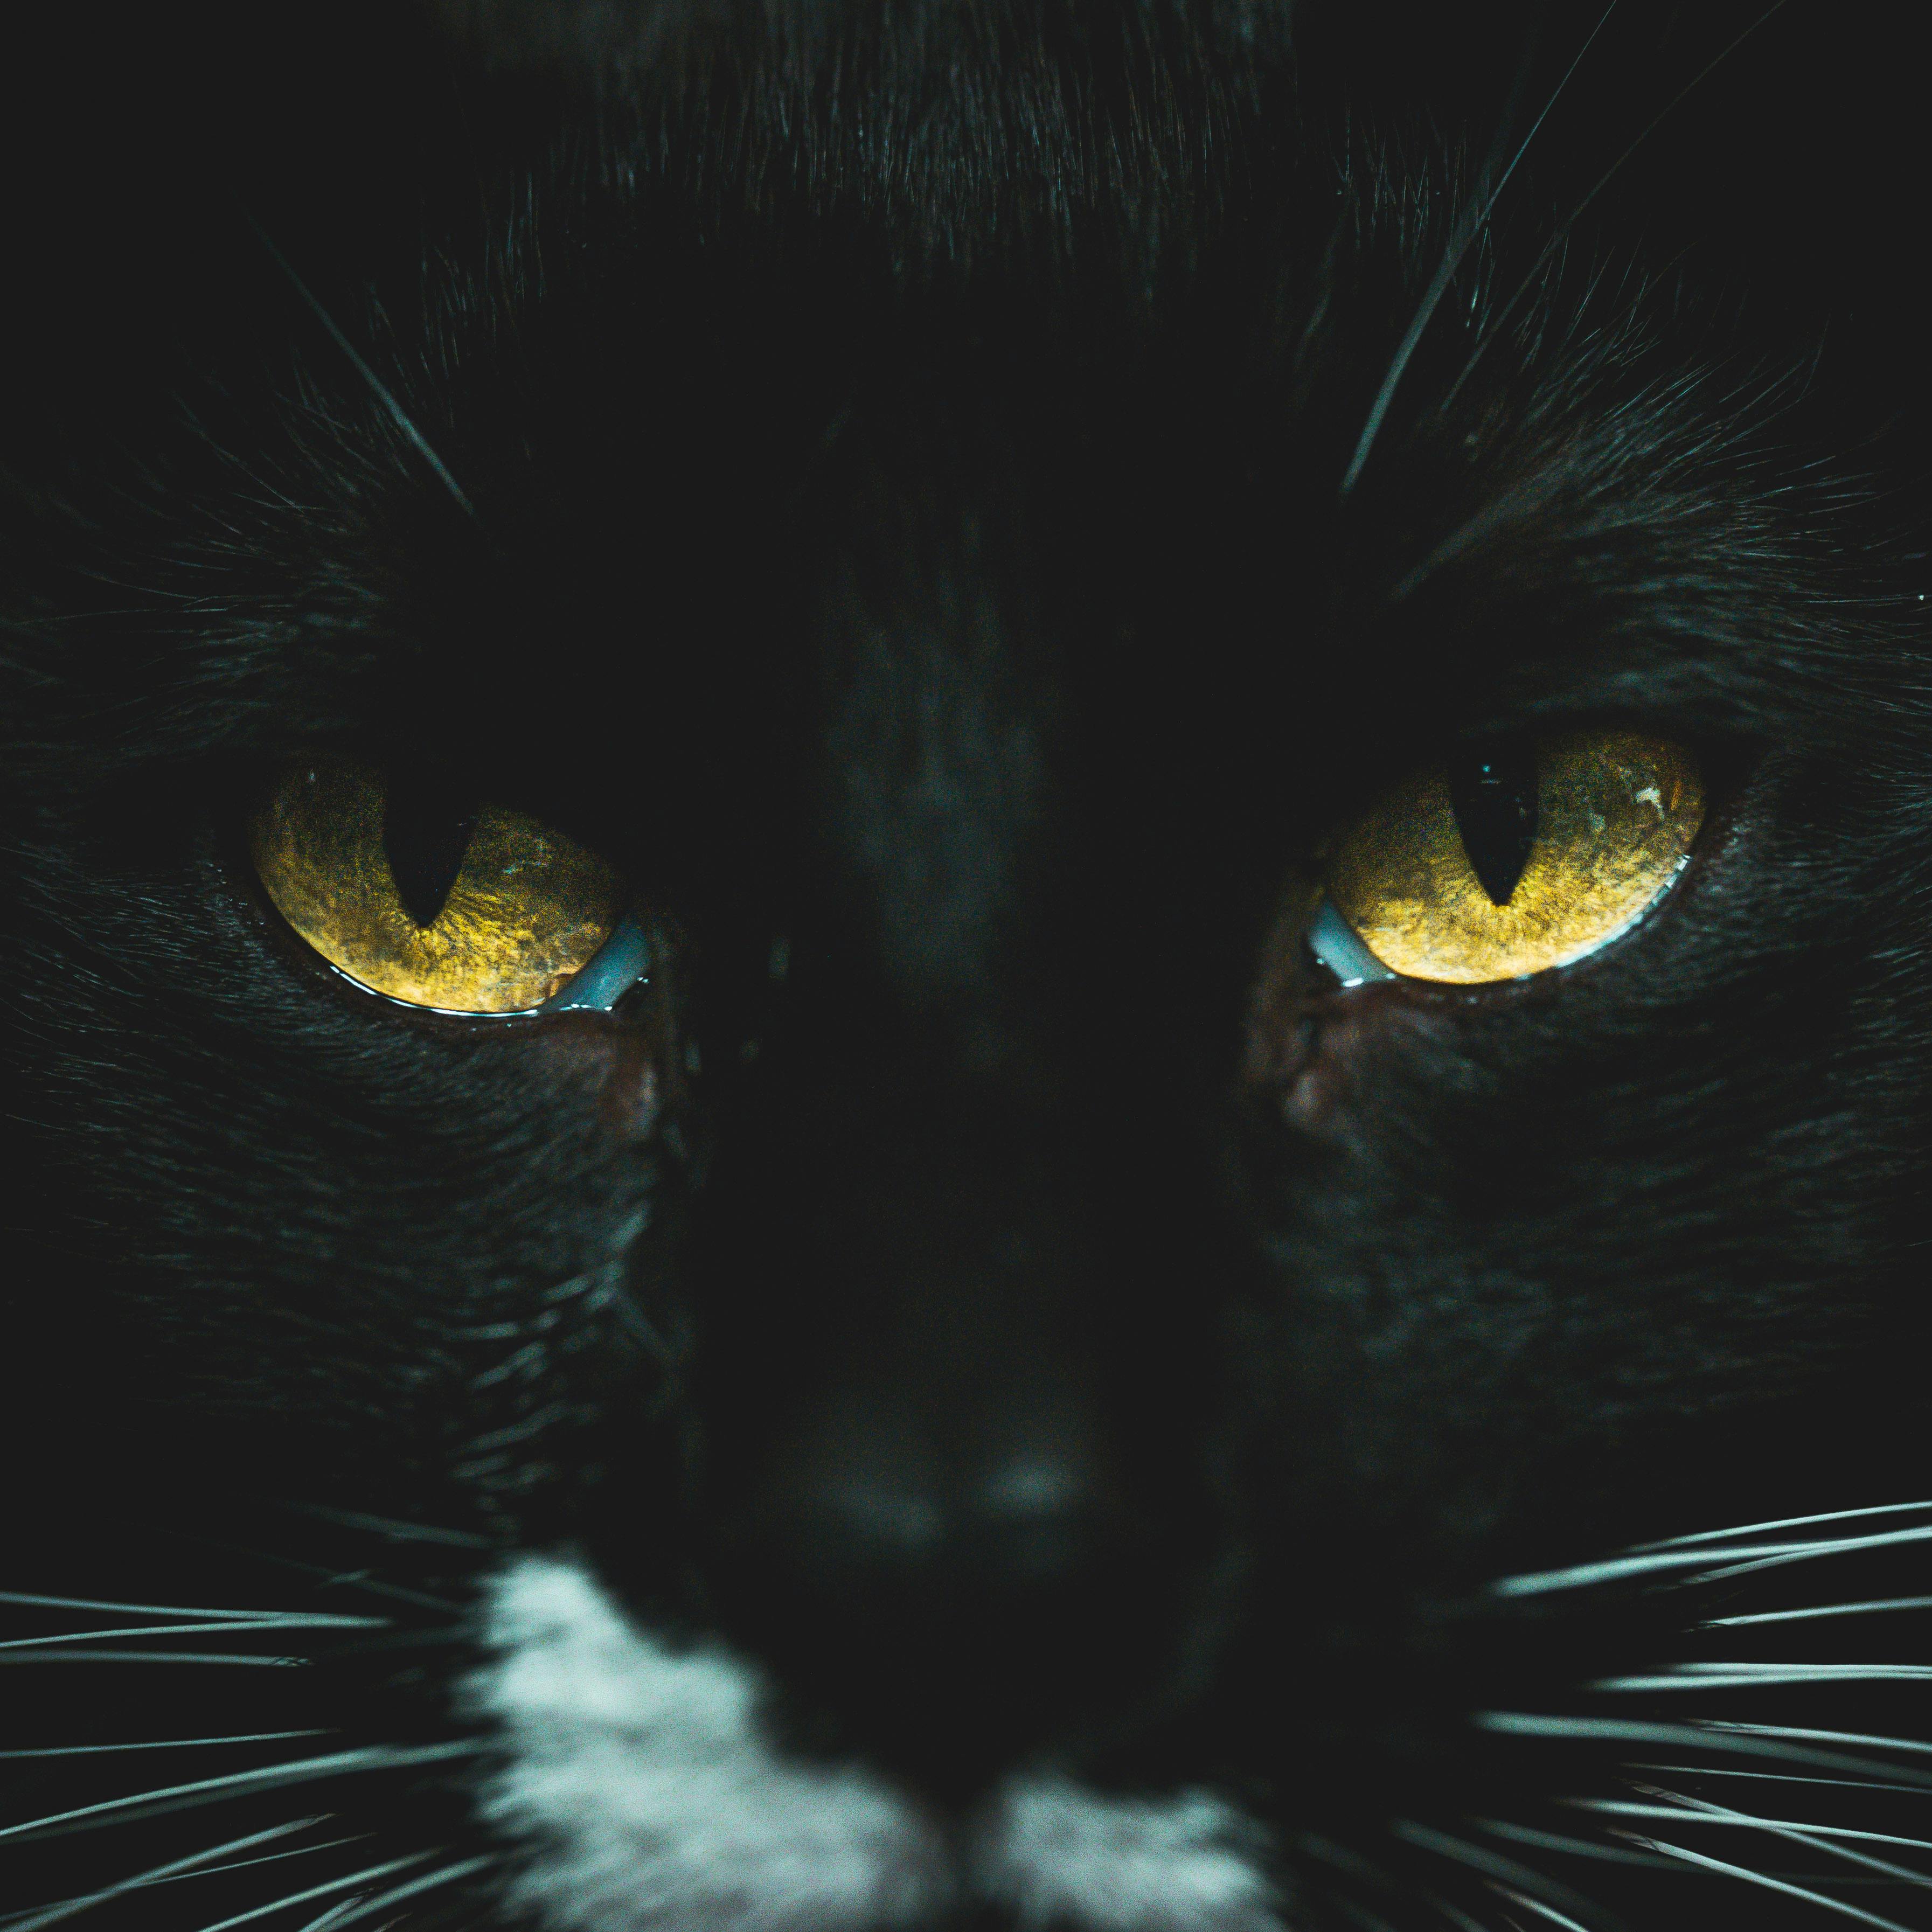 900+ Katzenaugen Bilder und Fotos · Kostenlos Downloaden · Pexels